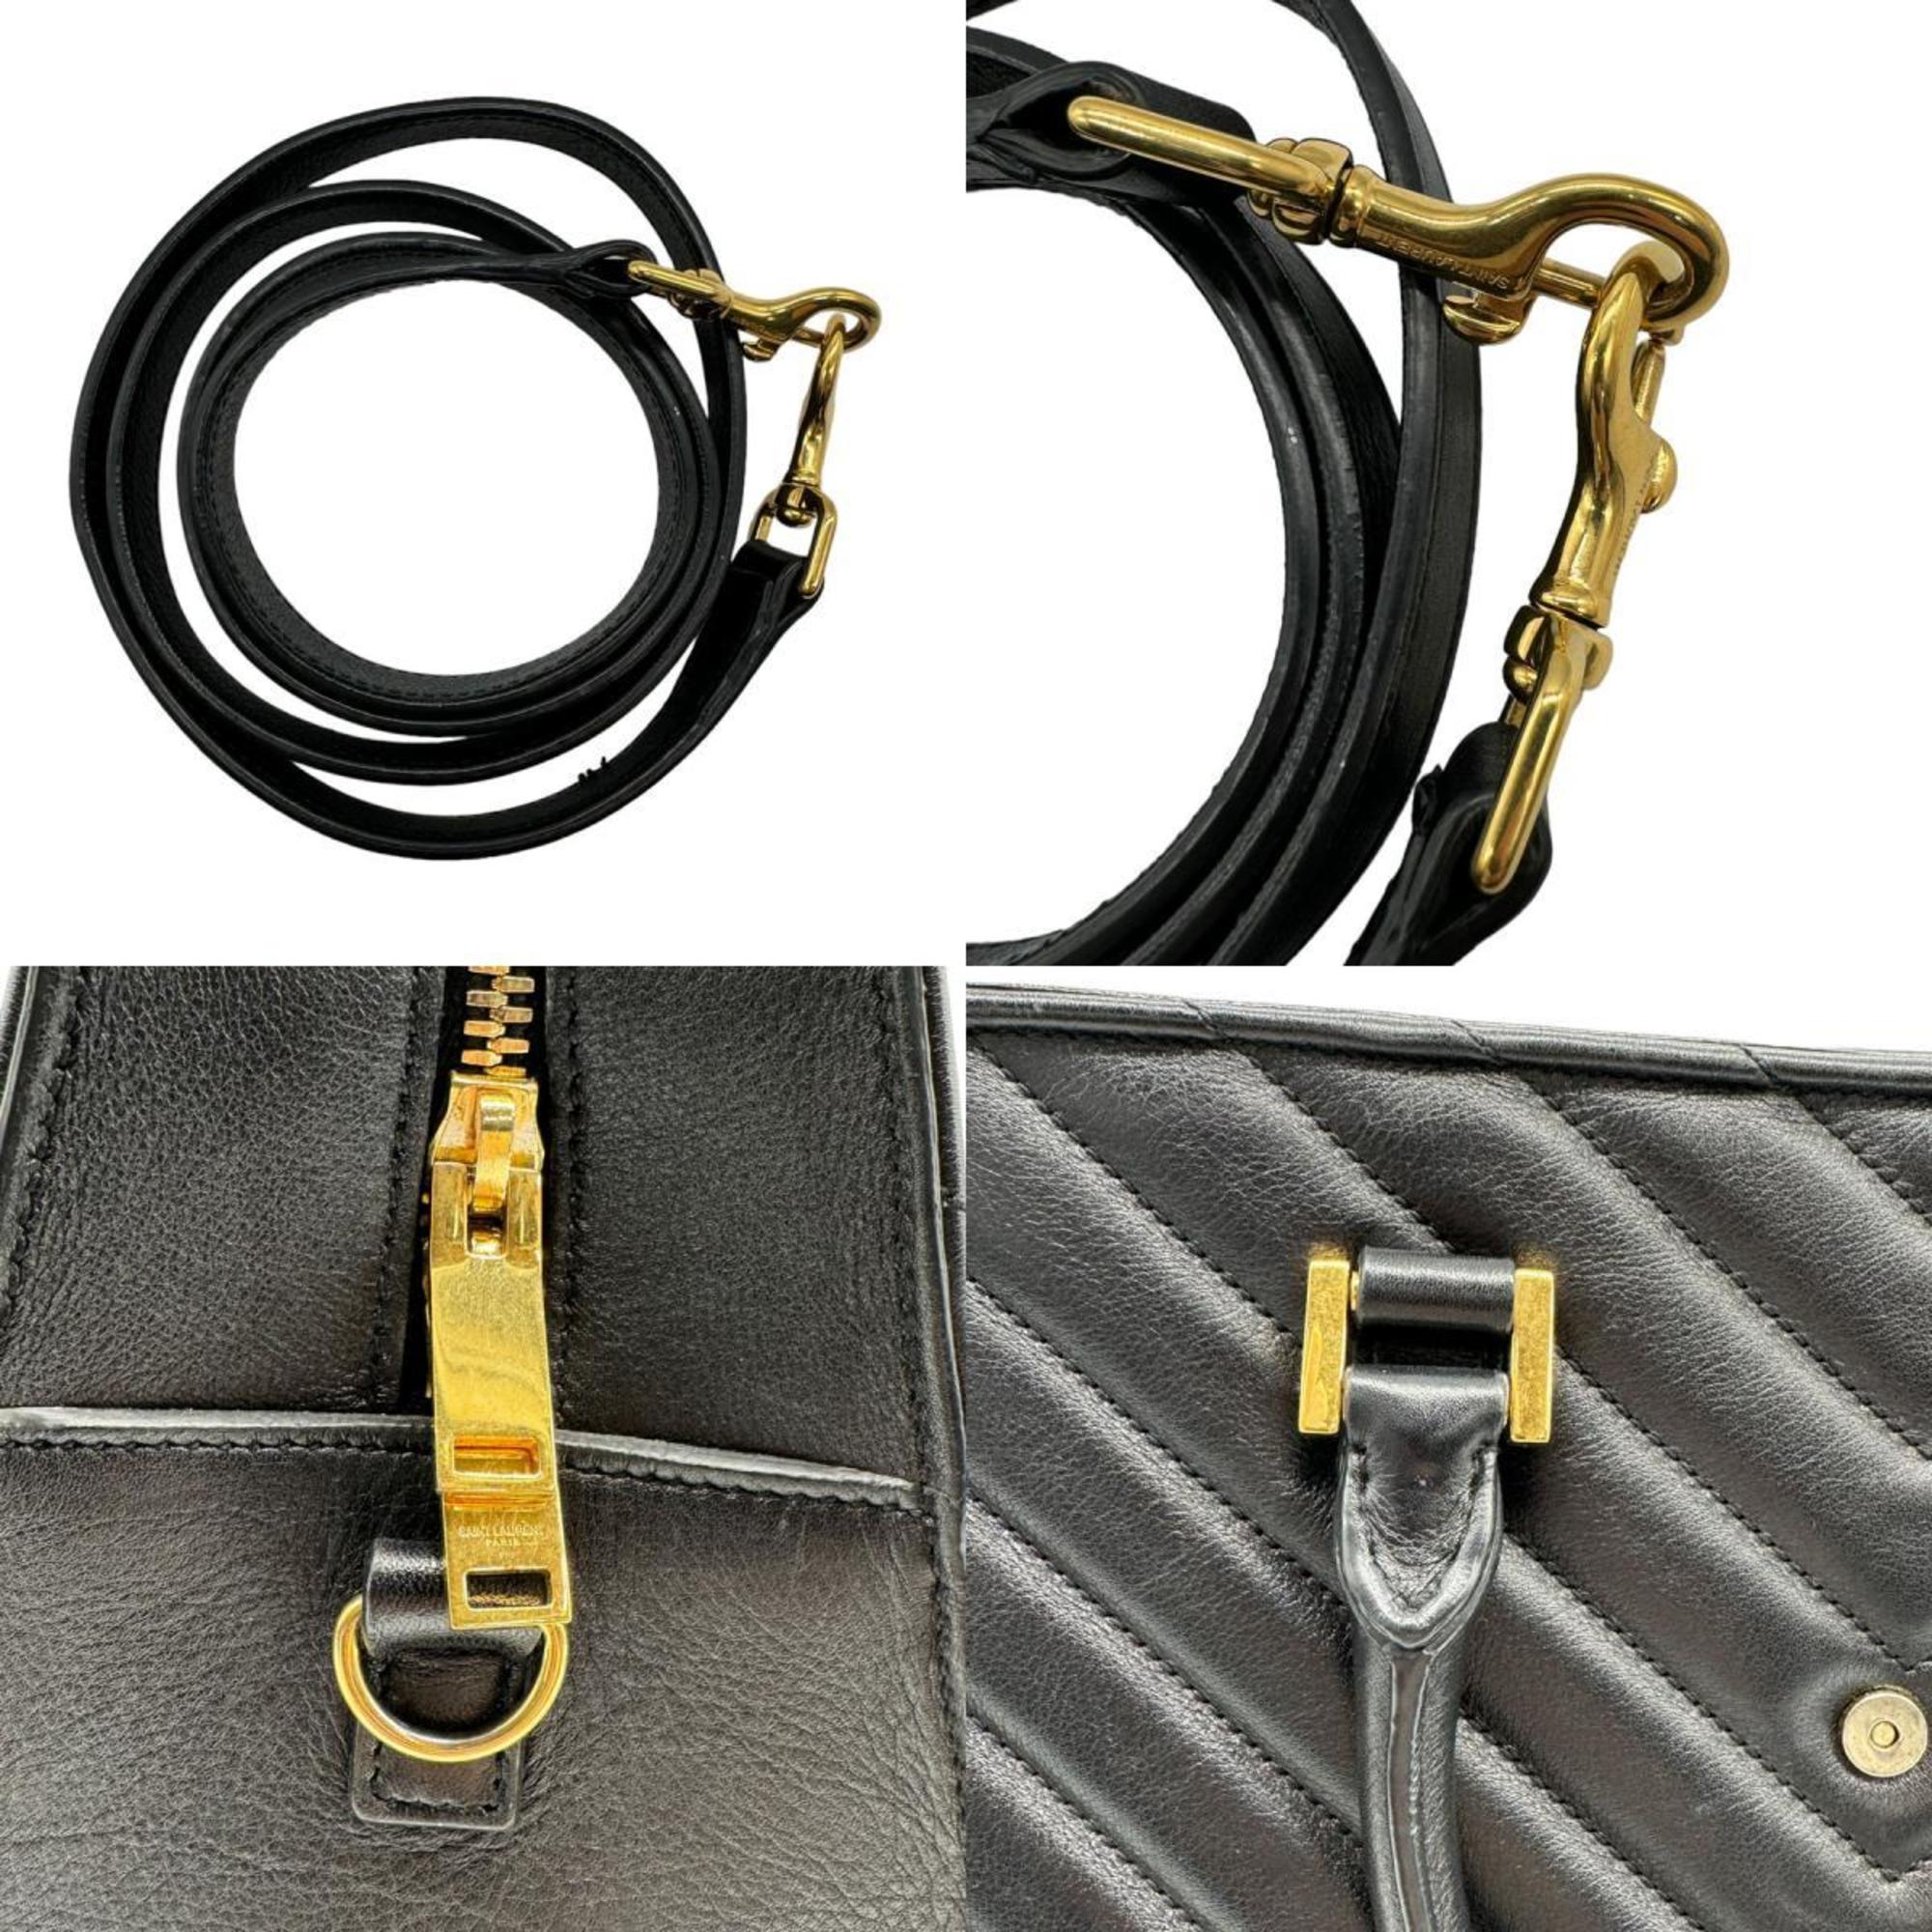 Saint Laurent SAINT LAURENT Handbag Shoulder Bag Leather Black Gold Ladies 357397